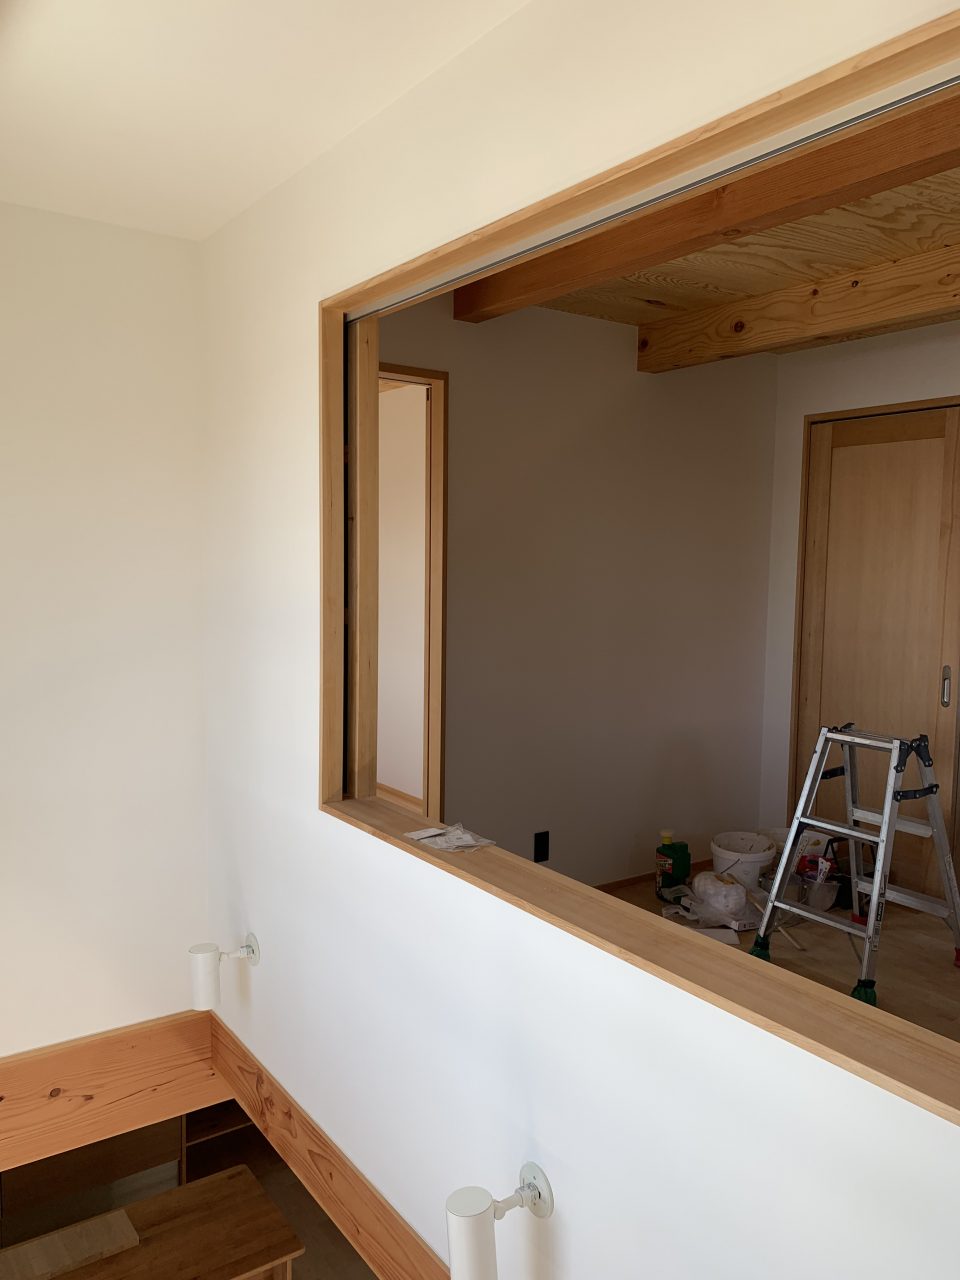 吹抜と２階のワークスペースは壁で仕切り、建具で開閉度を調整できる。
音の問題や明るさ（日射）のコントロールが可能。